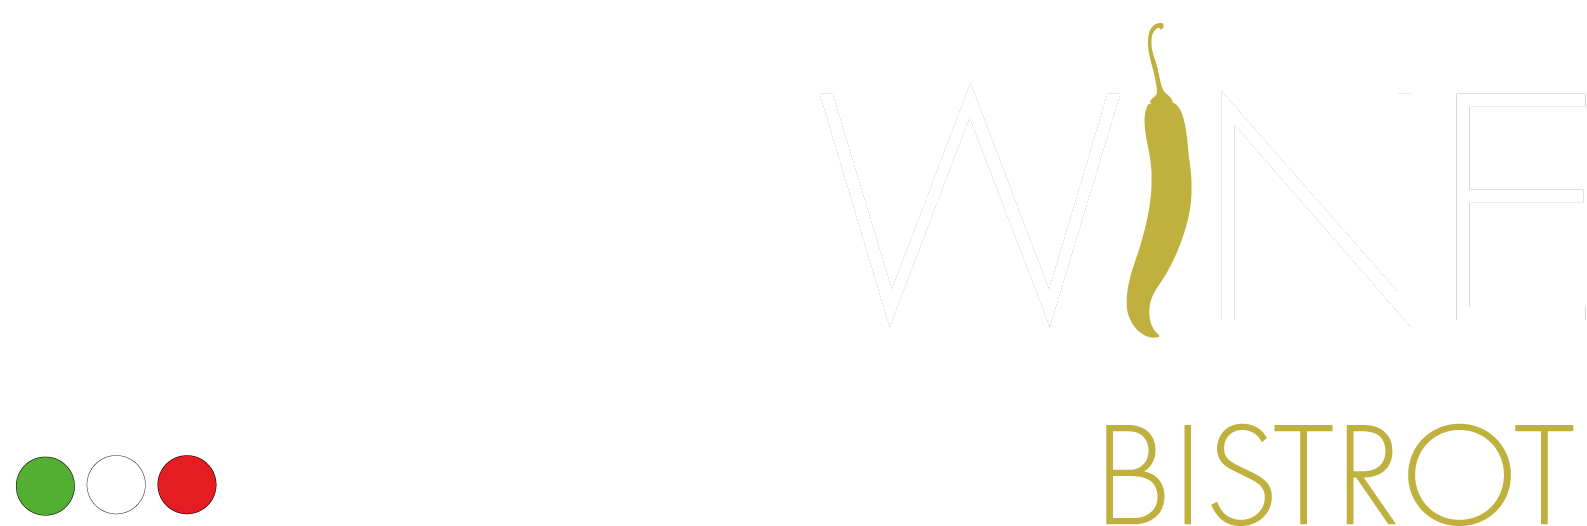 SpicyWine Bistrot Logo